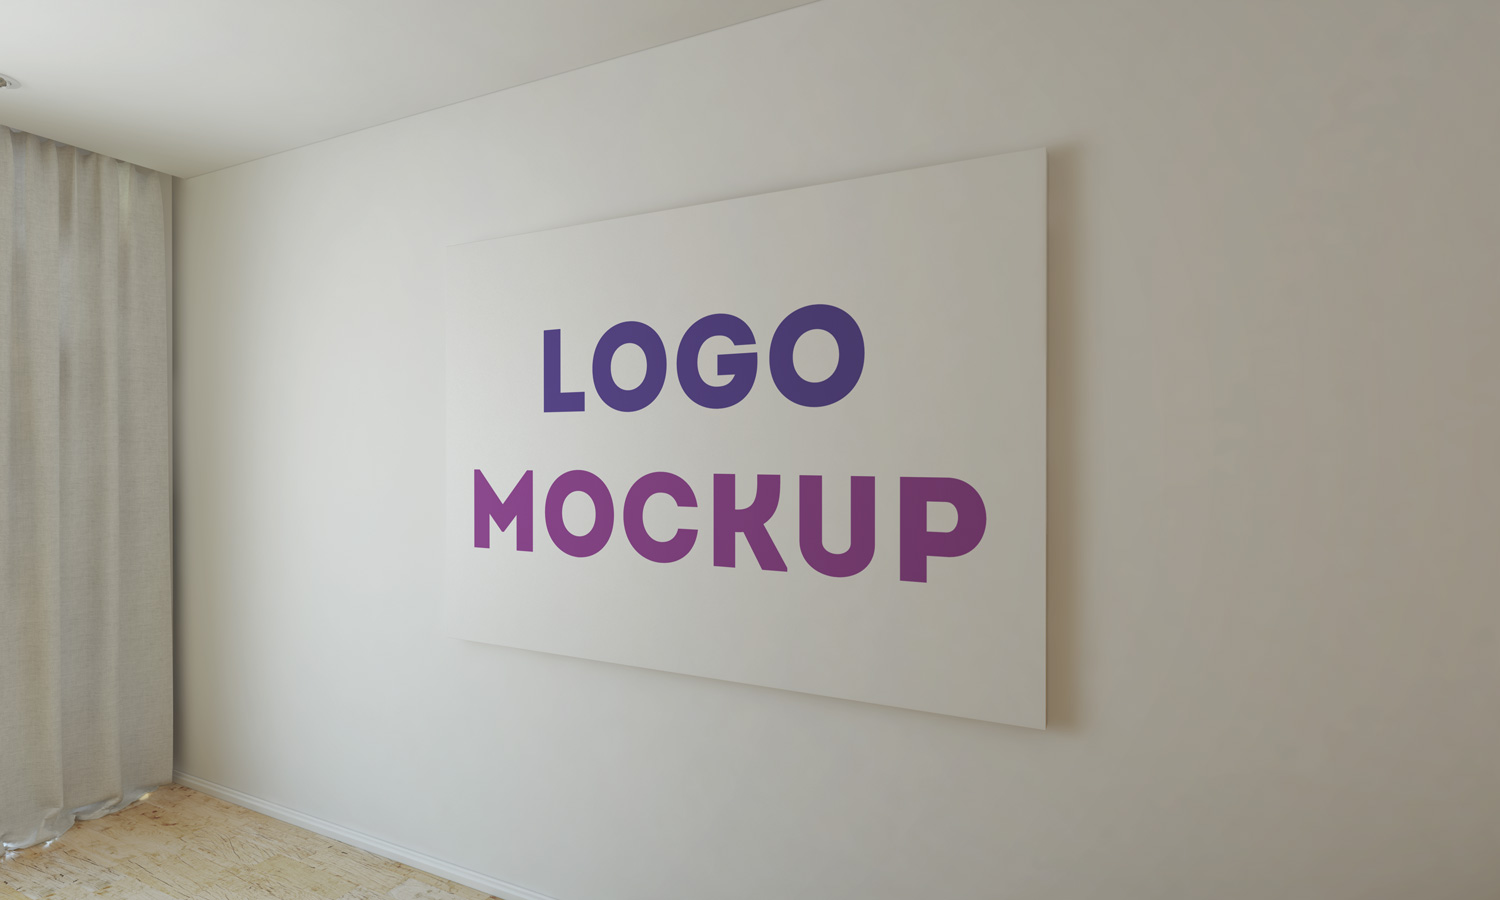 Download Office Wall Logo MockUp Vol 2 PSD Mockup Templates